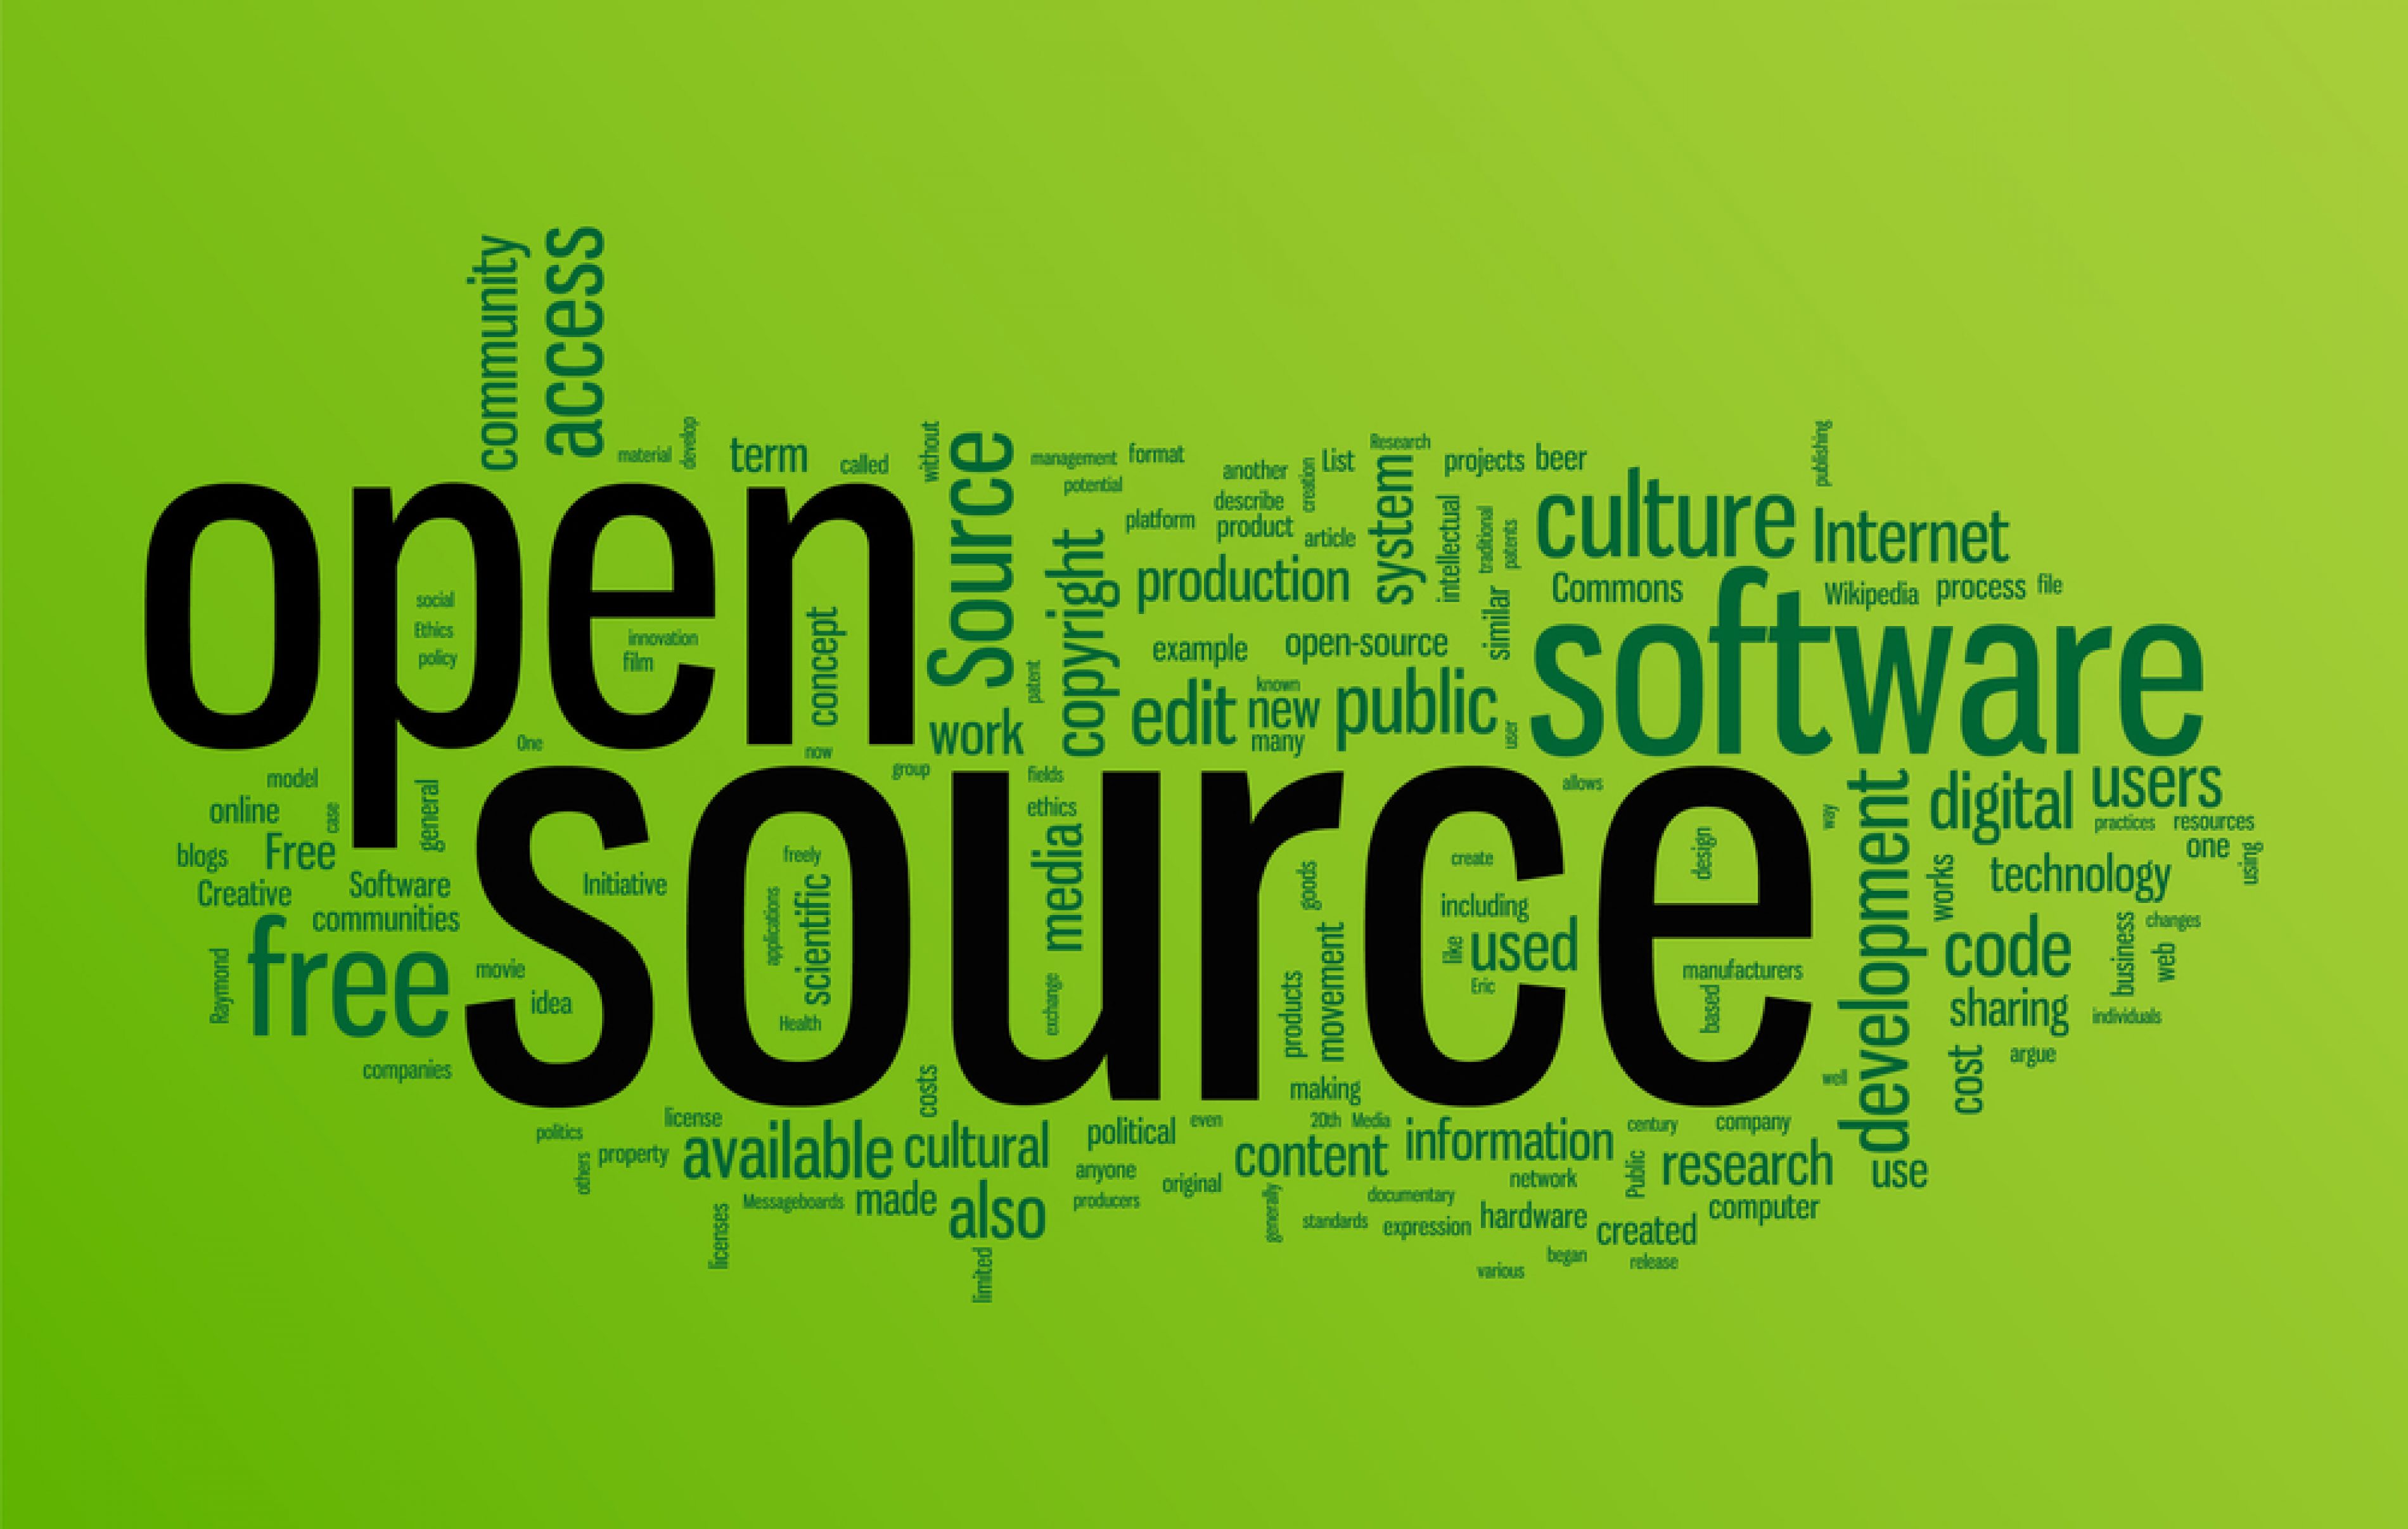 Код опен. Open source. Открытый исходный код. Open source проекты. Открытое программное обеспечение.